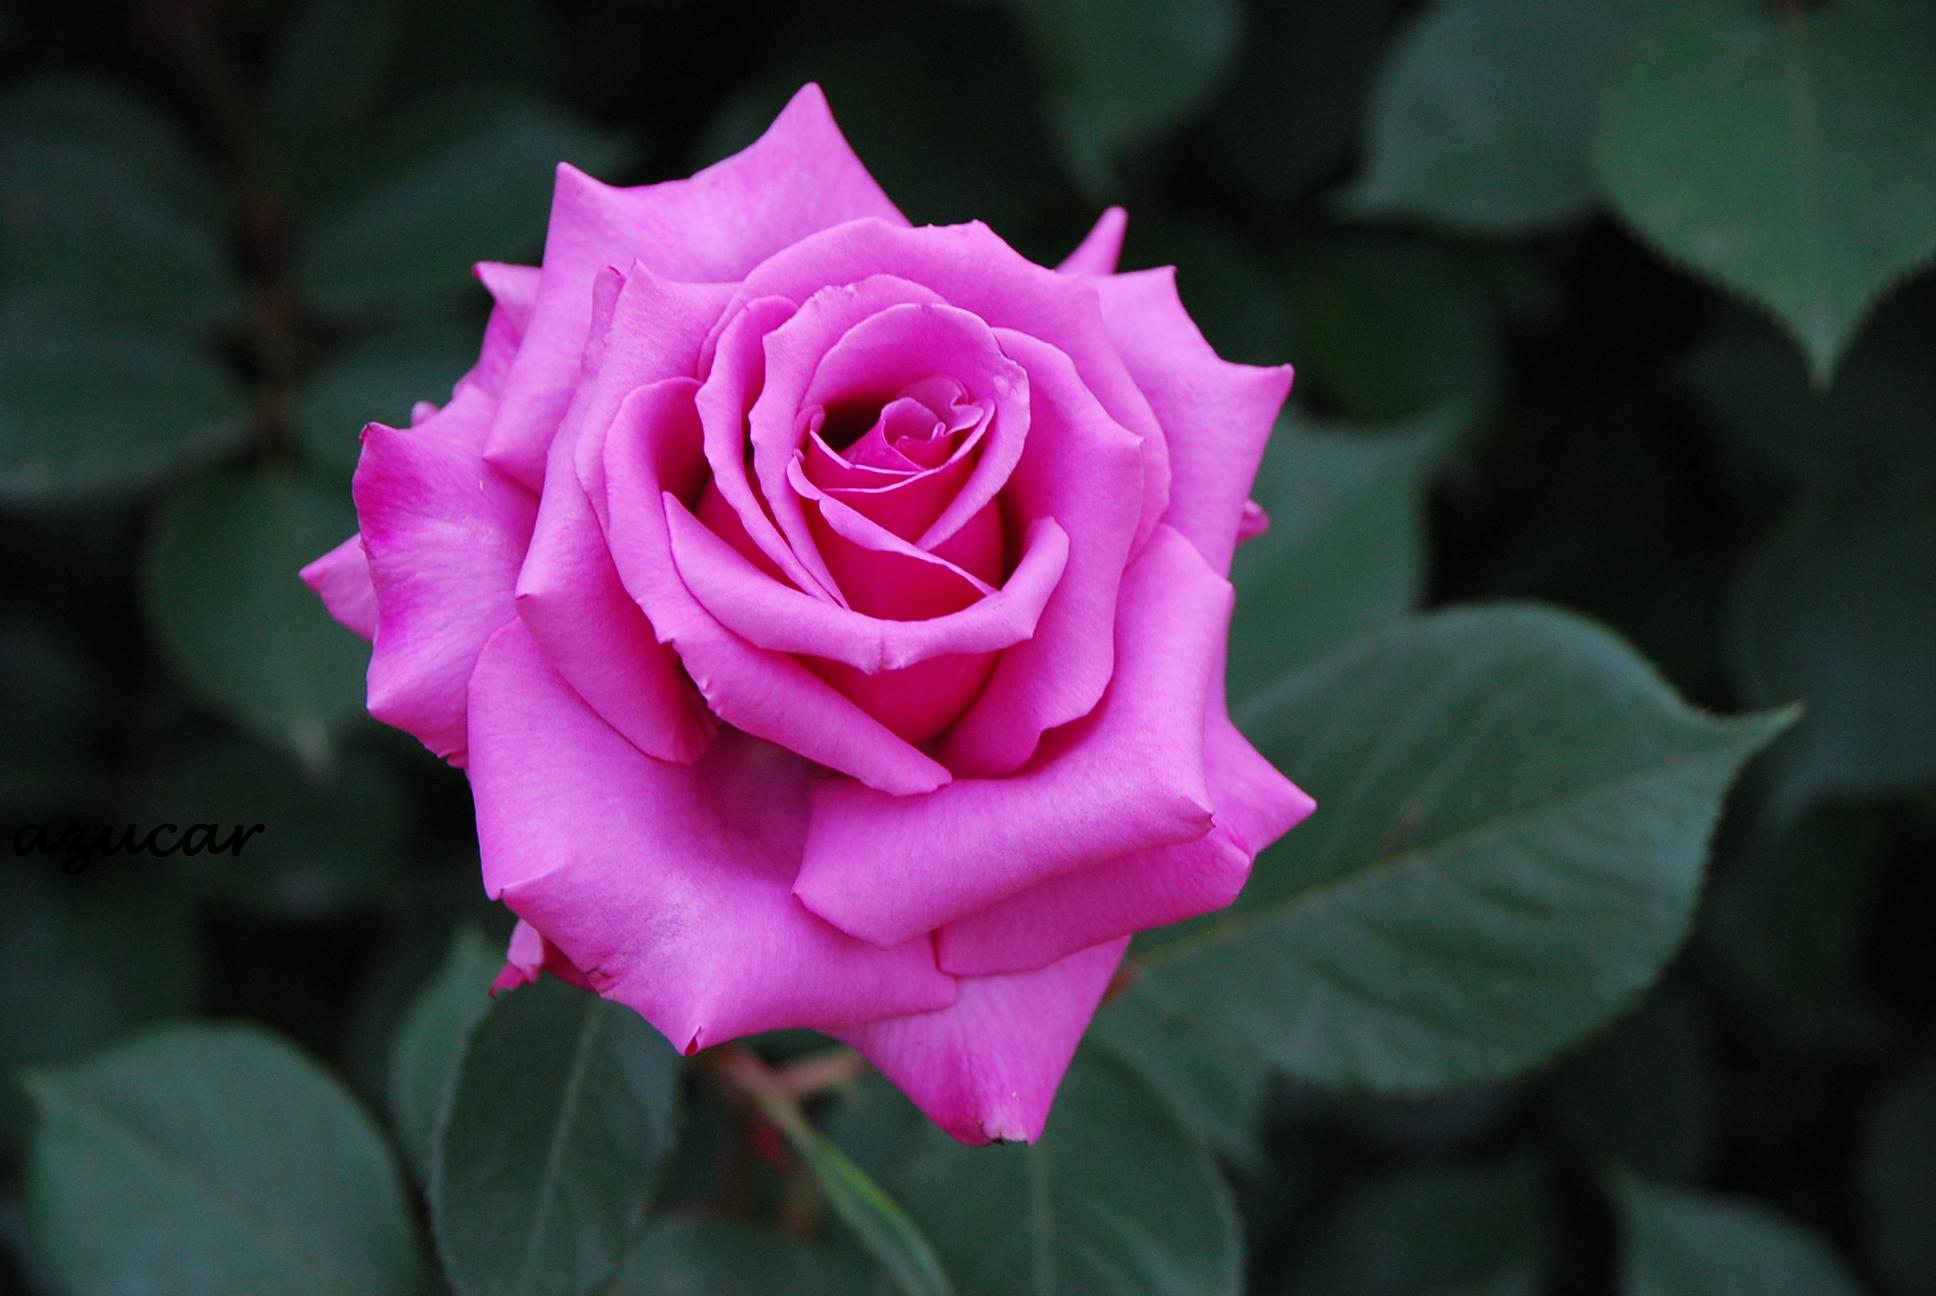 Обои флора розы розовый бутон на рабочий стол